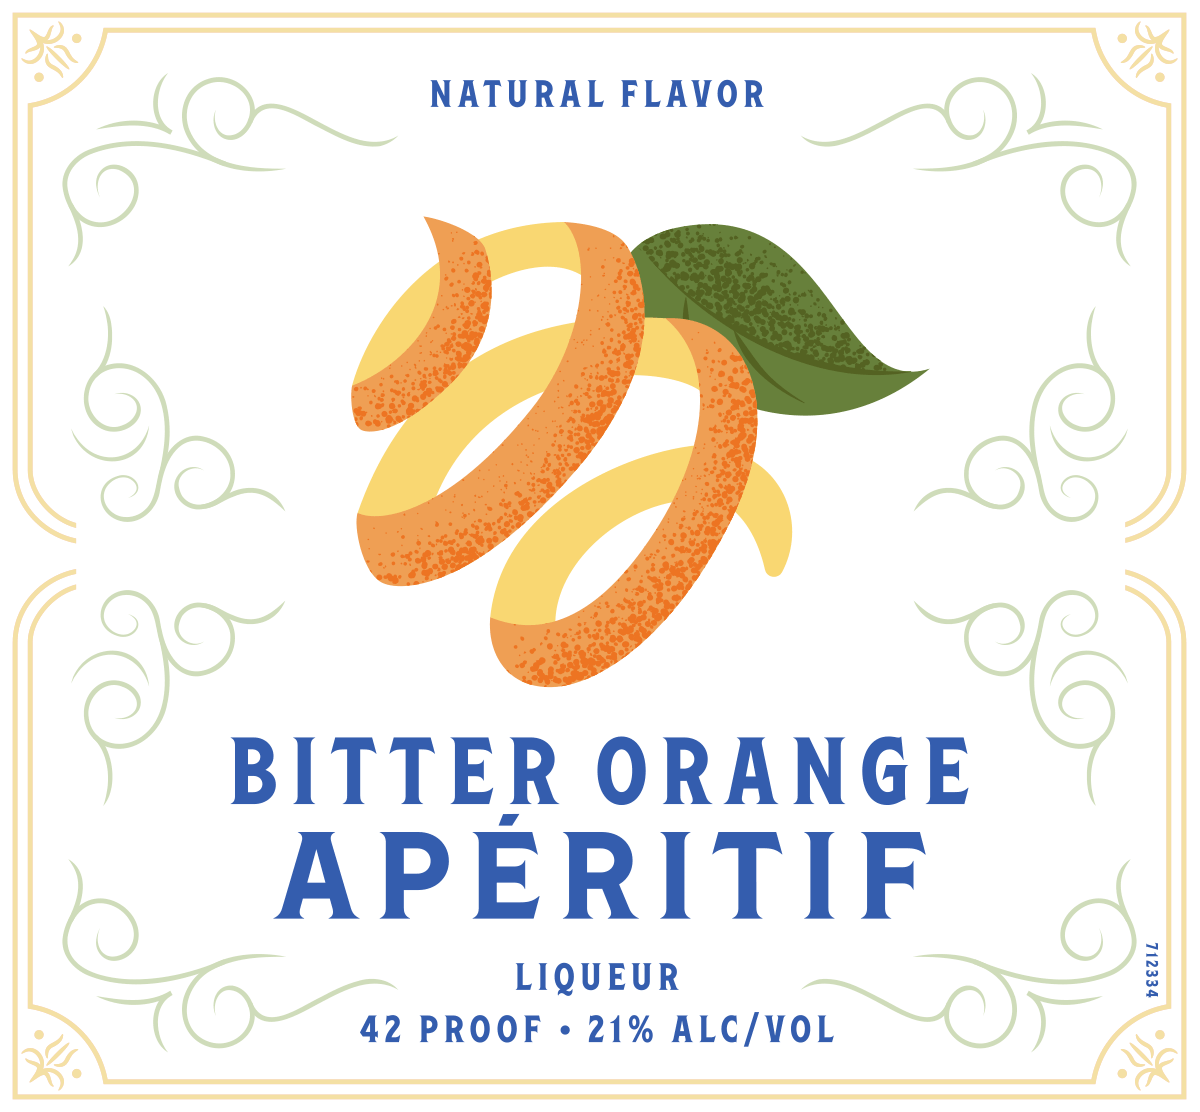 Leroux® Bitter Orange Apéritif label